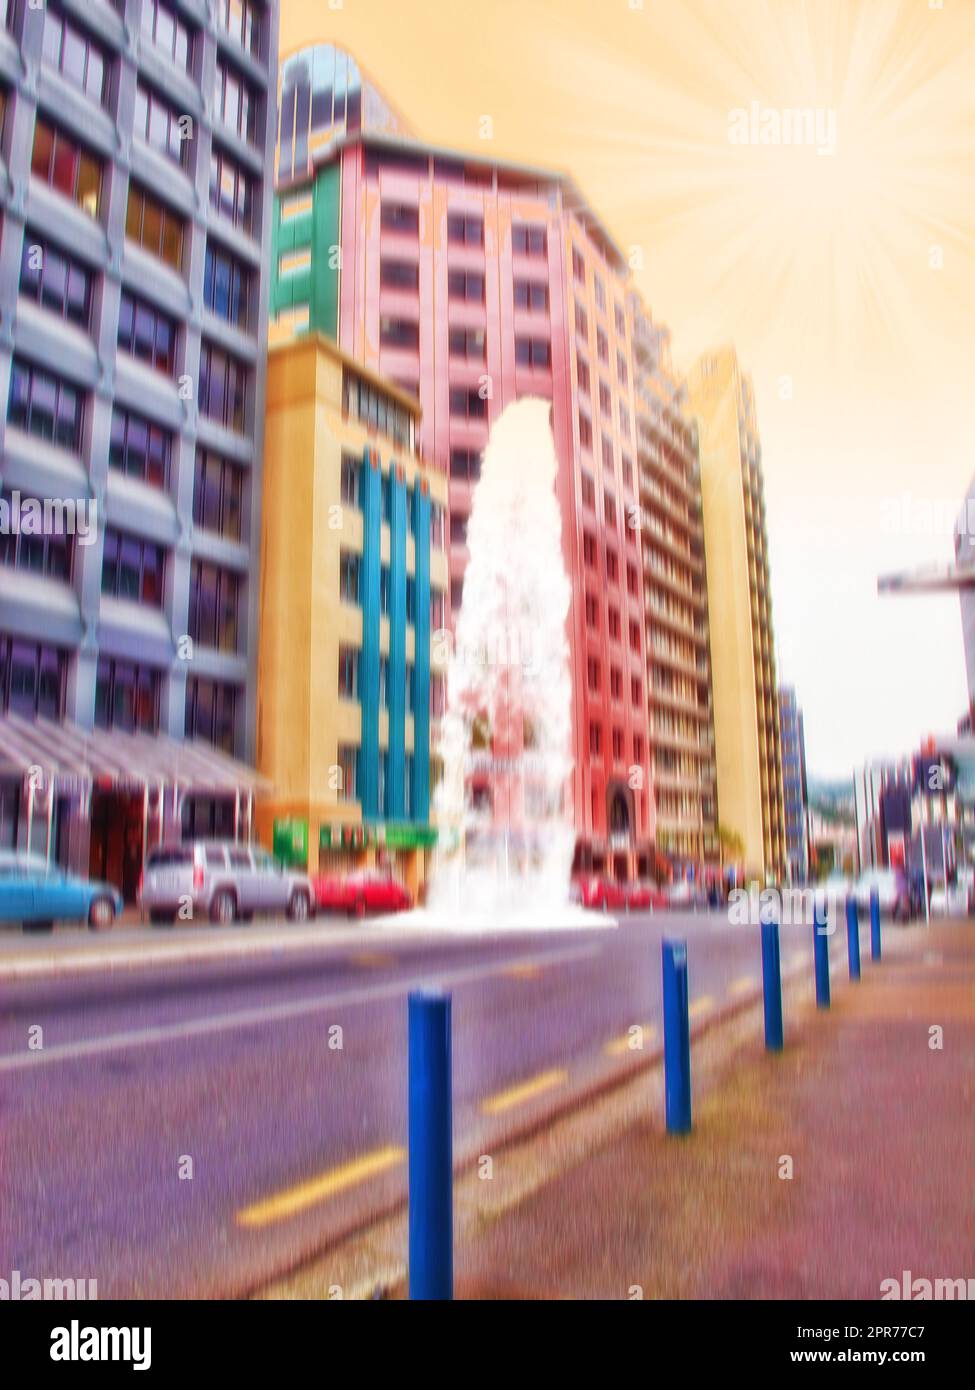 Une rue de ville colorée et floue au coucher du soleil. Concept artistique d'une ville urbaine avec des voitures garées à proximité de bureaux et d'un ciel jaune. Vue à angle bas de l'architecture abstraite futuriste avec lumière du soleil Banque D'Images